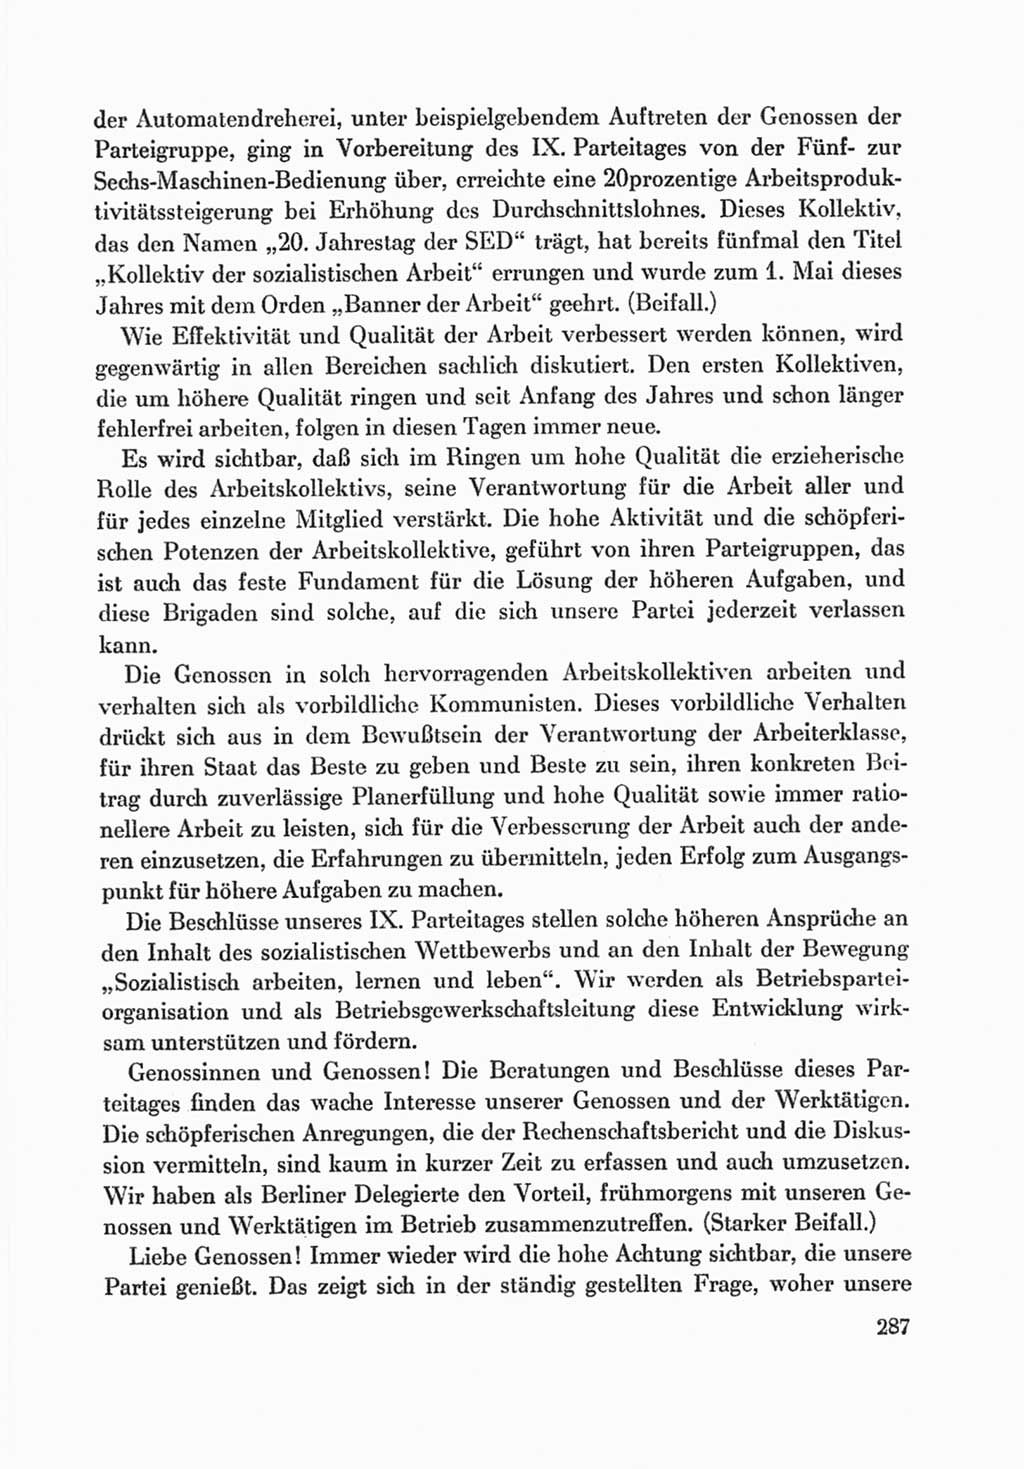 Protokoll der Verhandlungen des Ⅸ. Parteitages der Sozialistischen Einheitspartei Deutschlands (SED) [Deutsche Demokratische Republik (DDR)] 1976, Band 1, Seite 287 (Prot. Verh. Ⅸ. PT SED DDR 1976, Bd. 1, S. 287)